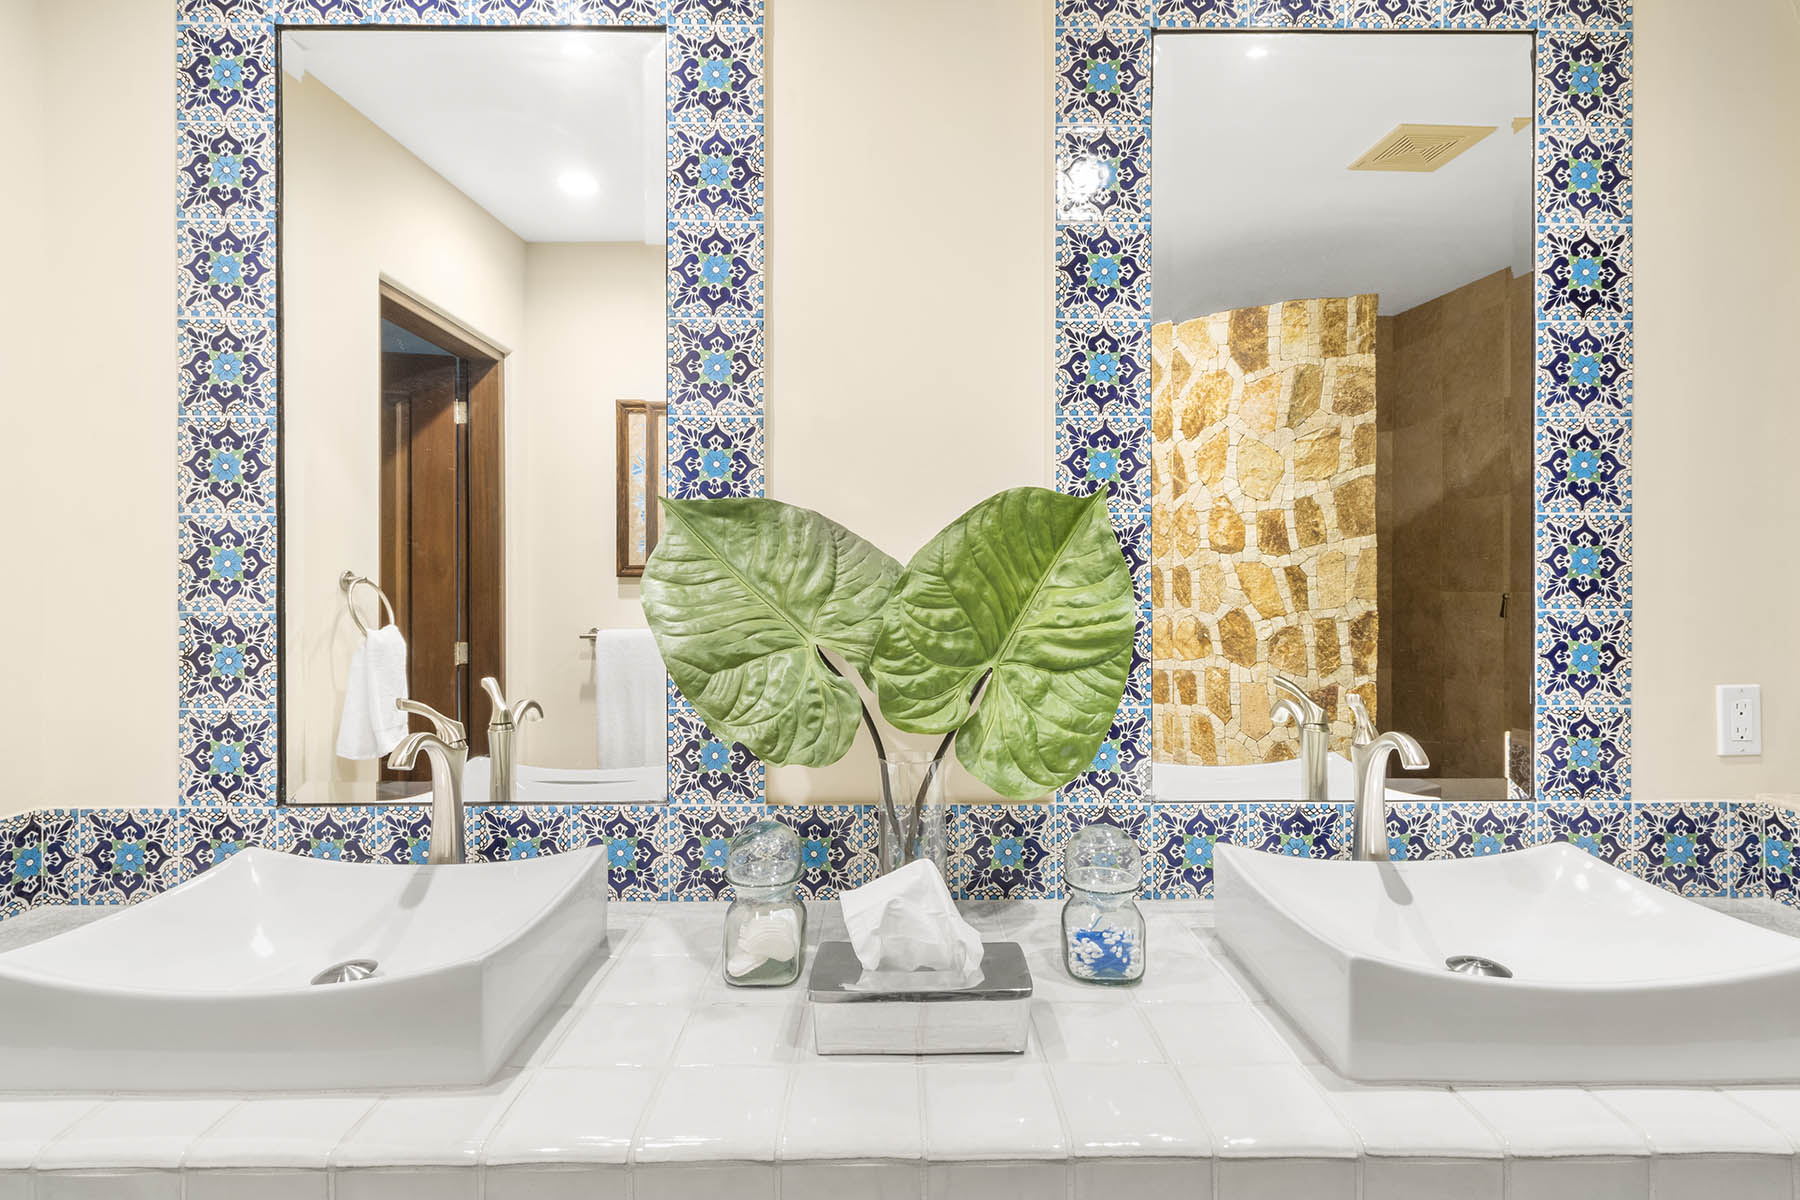 Bathroom Suite at Casa Santa Fe Vacation Rental in Cabo Mexico